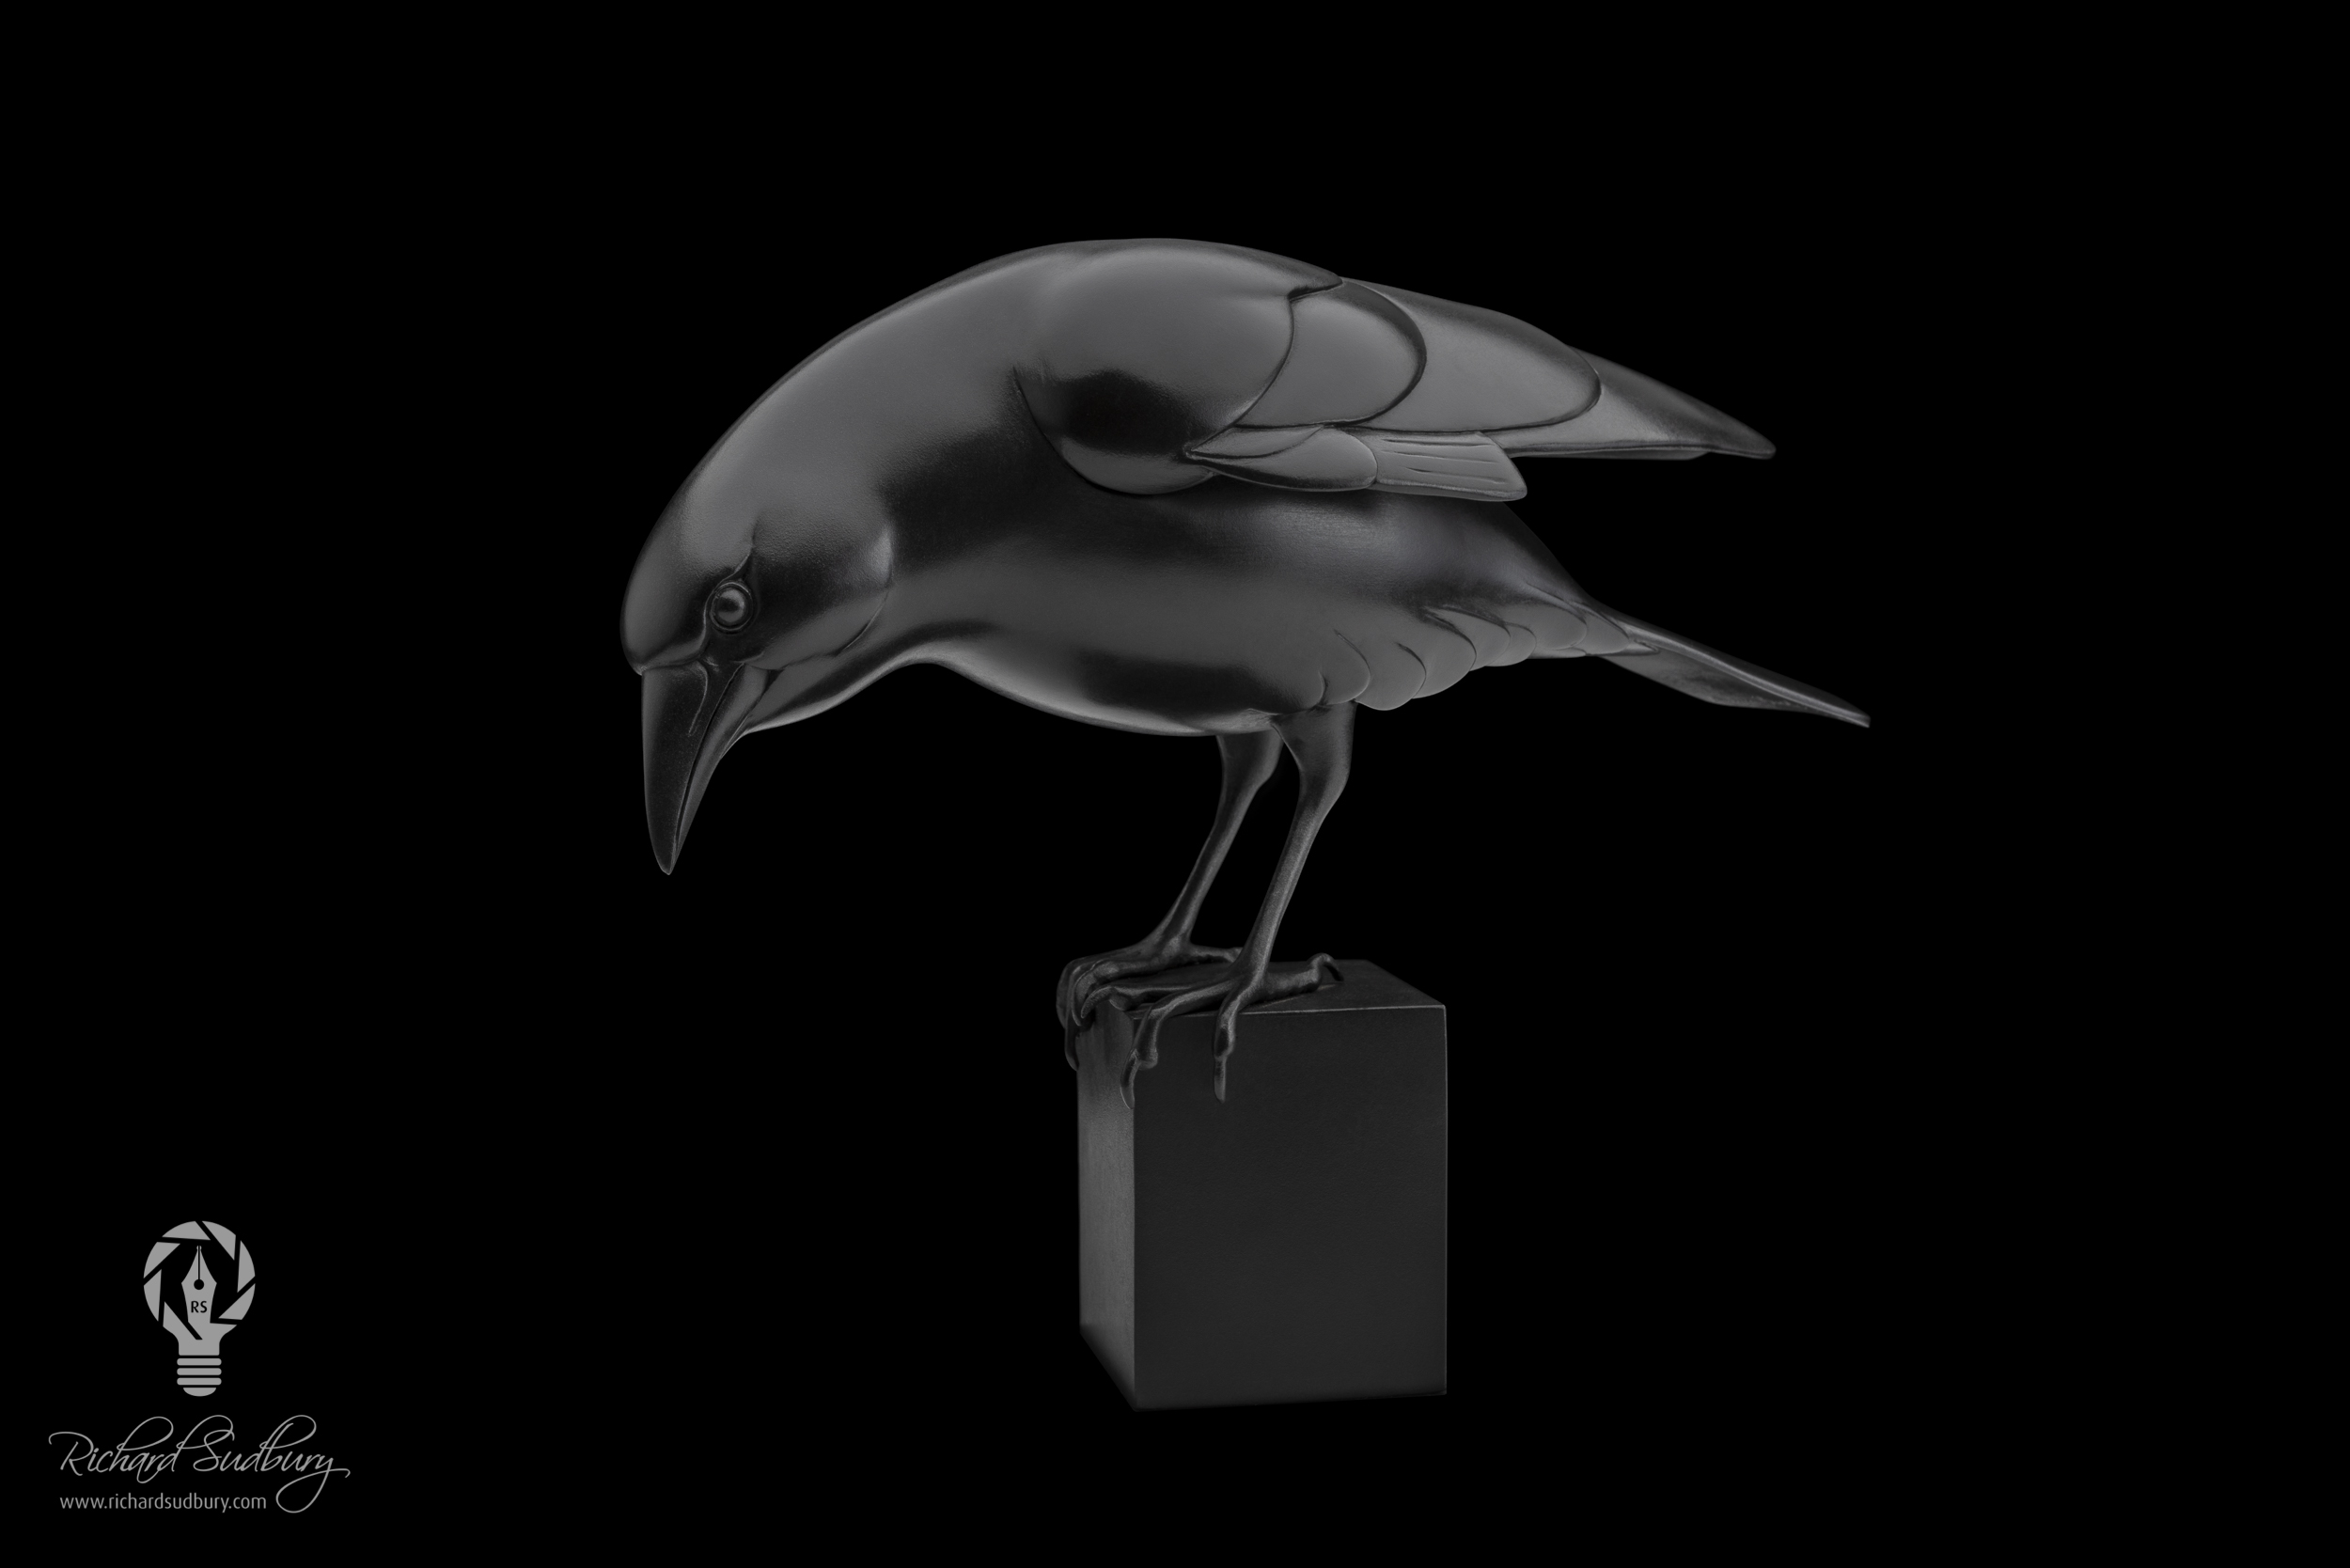 Adam Binder's Crow